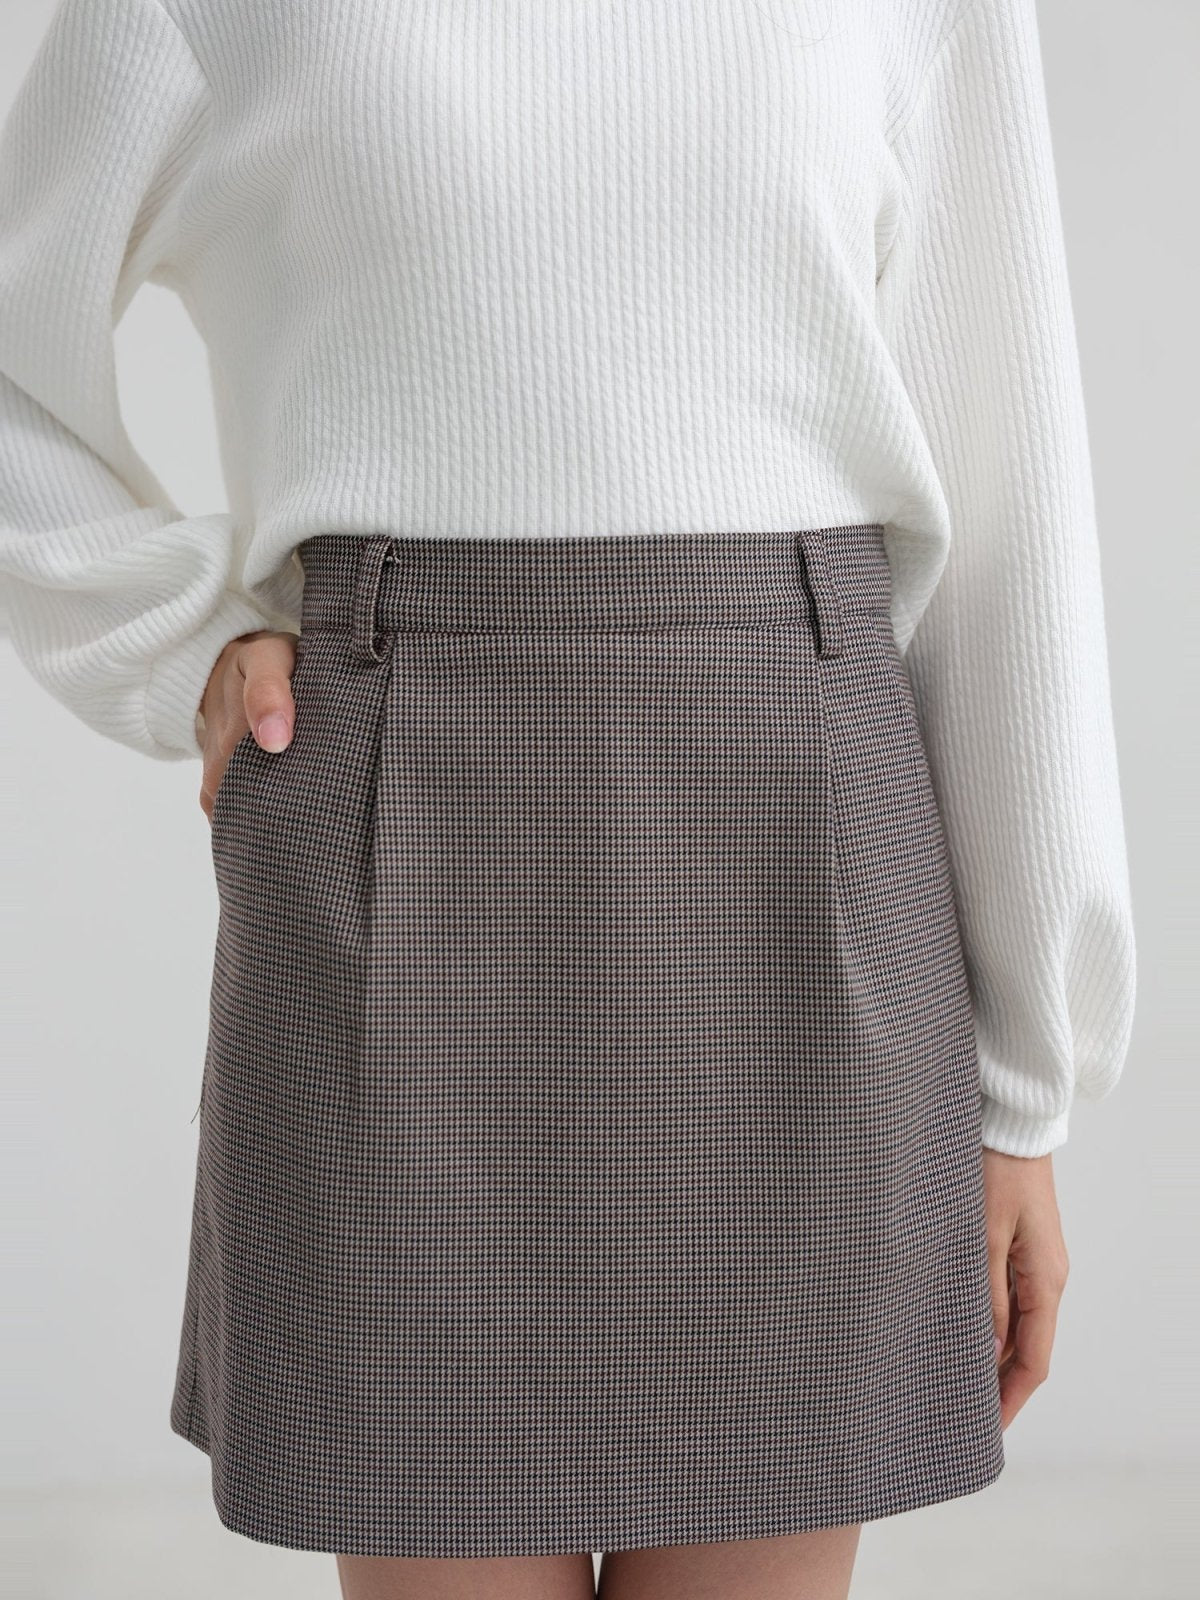 Belted Mini Skirt - DAG-DD1376-23DarkHoundtoothS - Dark Houndtooth - S - D'zage Designs